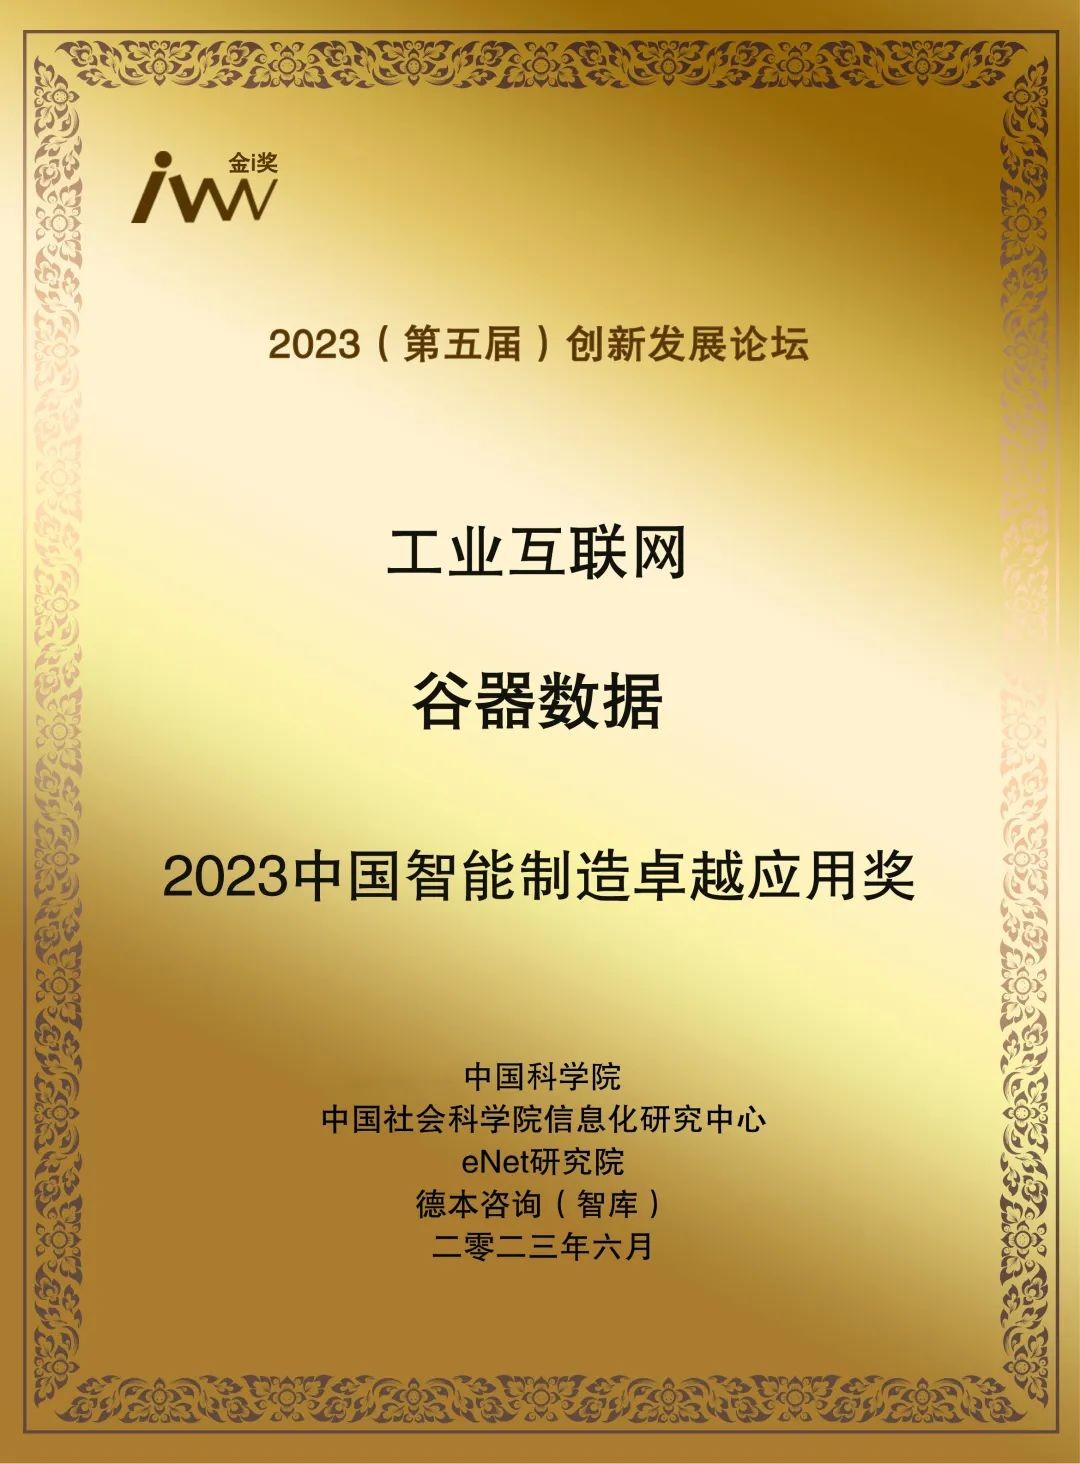 谷器数据获评“2023中国智能制造卓越应用奖”！_行业动态